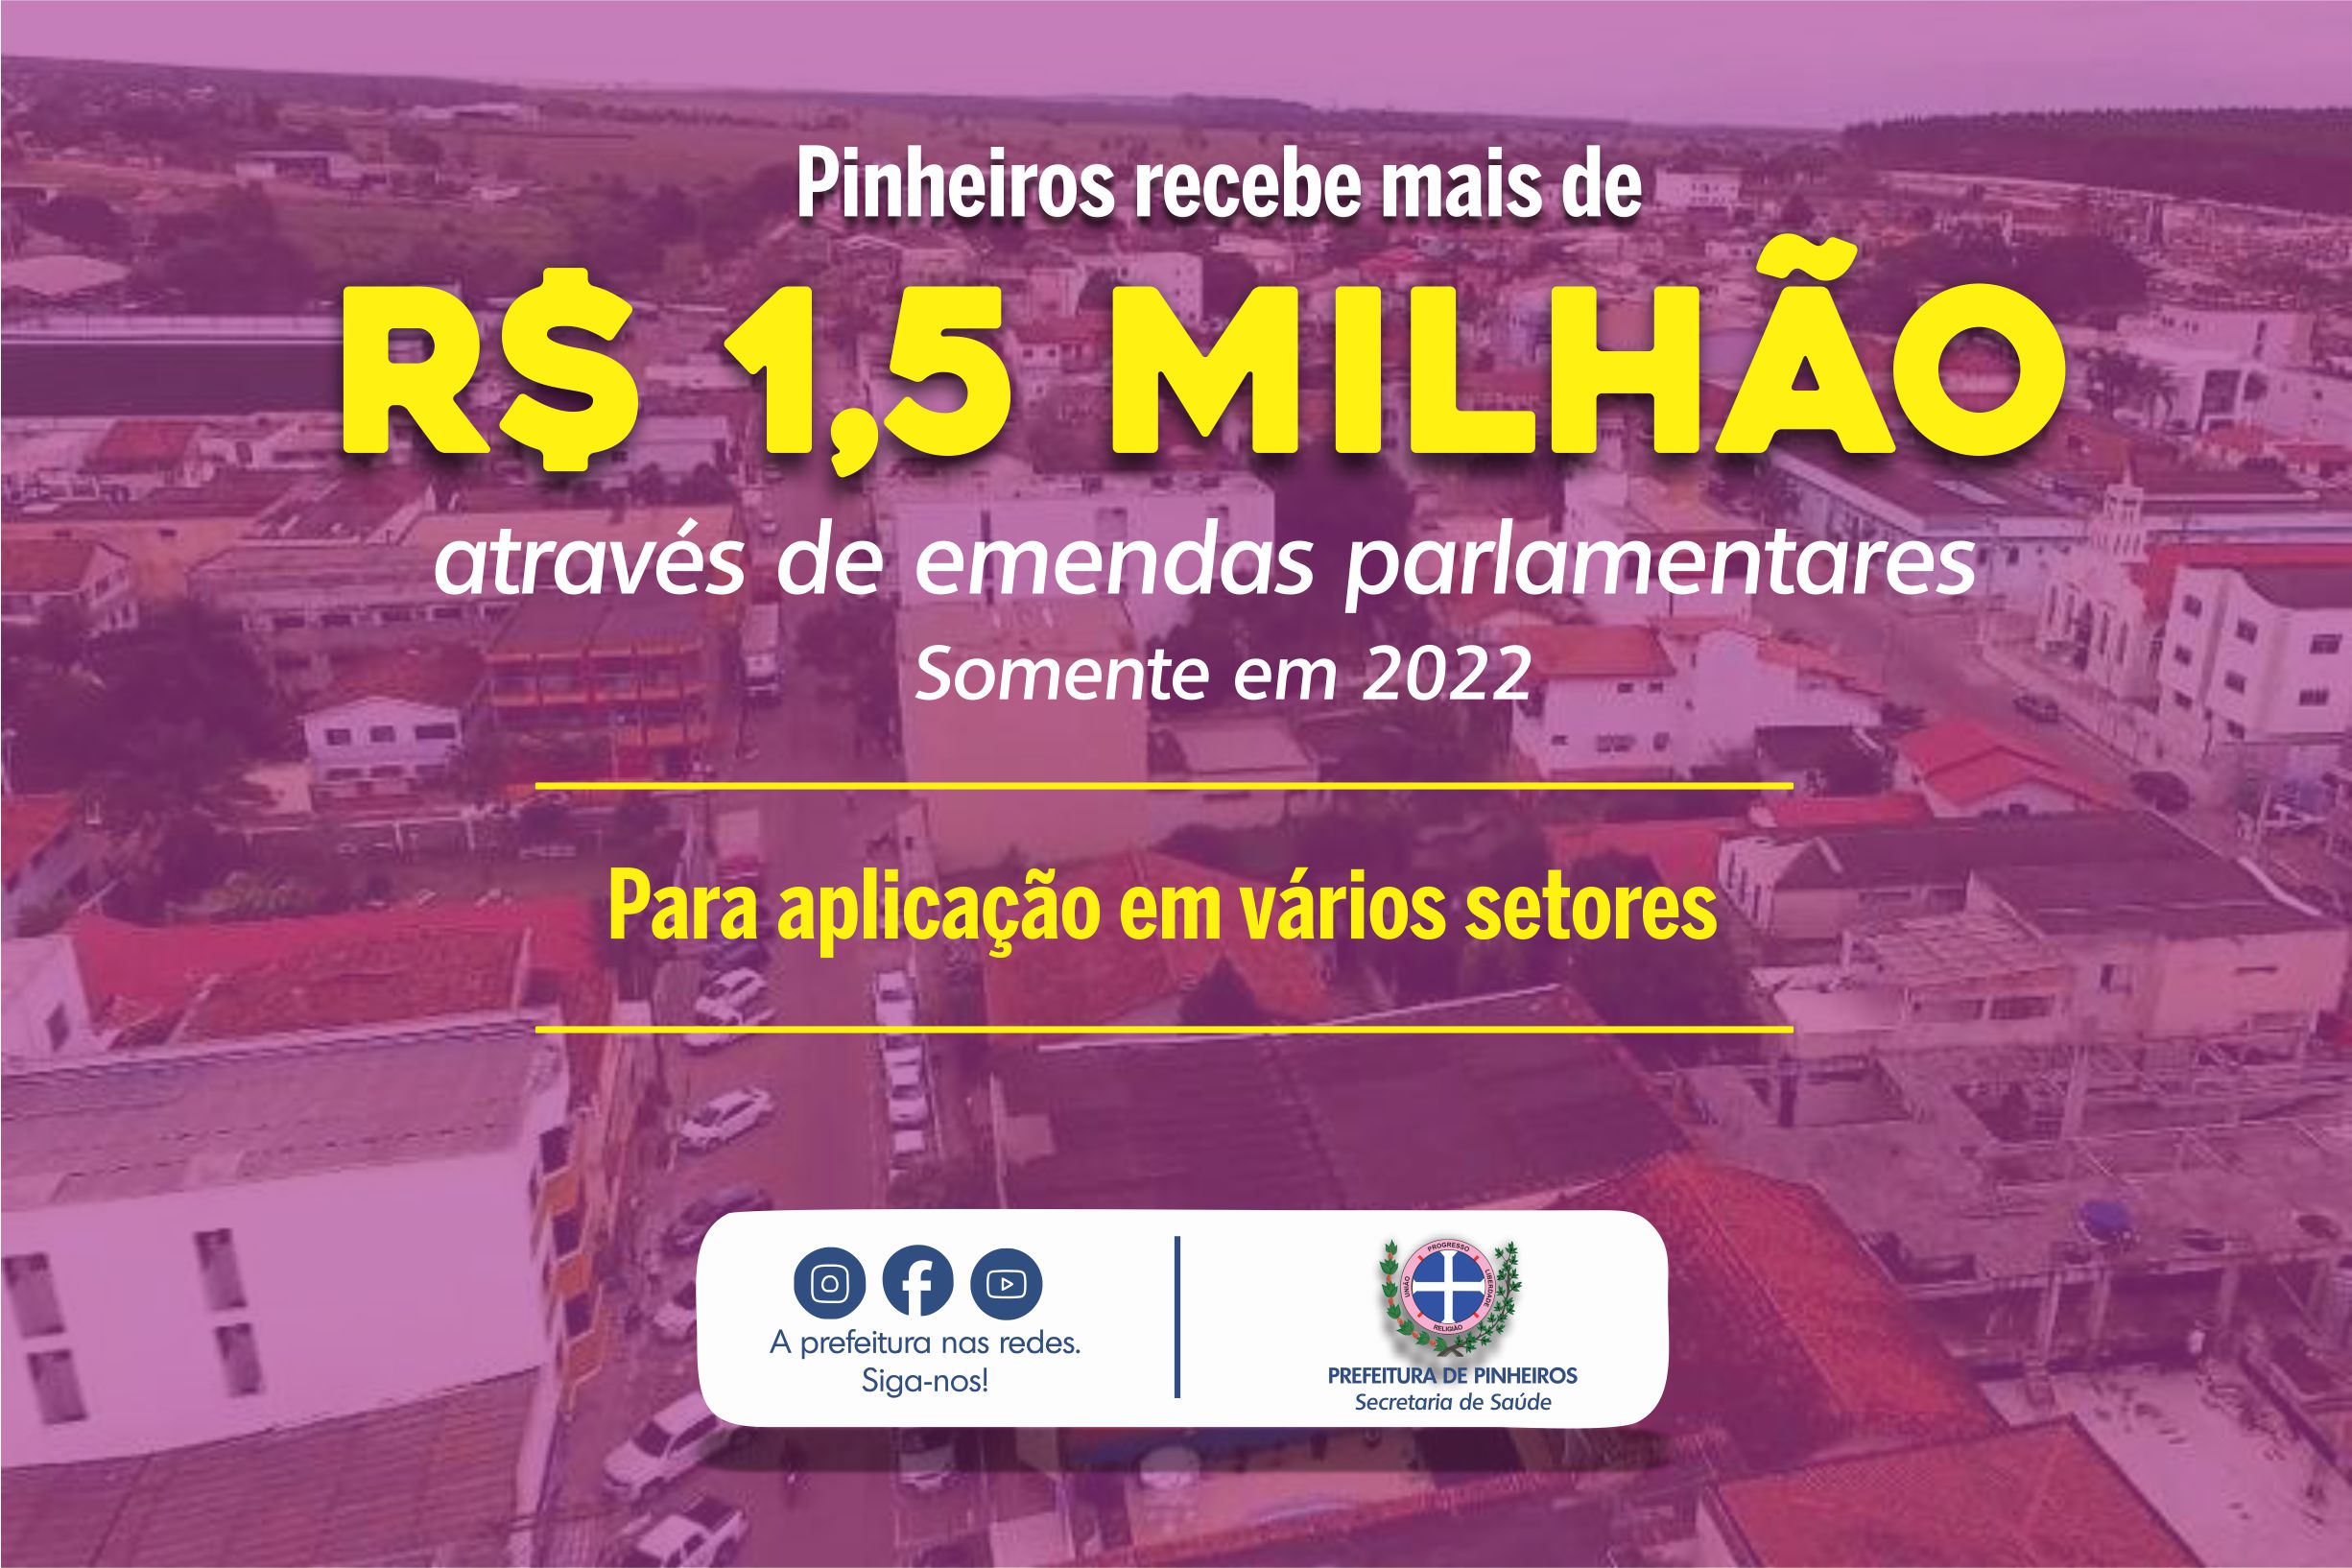 PINHEIROS JÁ RECEBEU MAIS DE R$ 1,5 MILHÃO ATRAVÉS DE EMENDAS PARLAMENTARES SÓ EM 2022